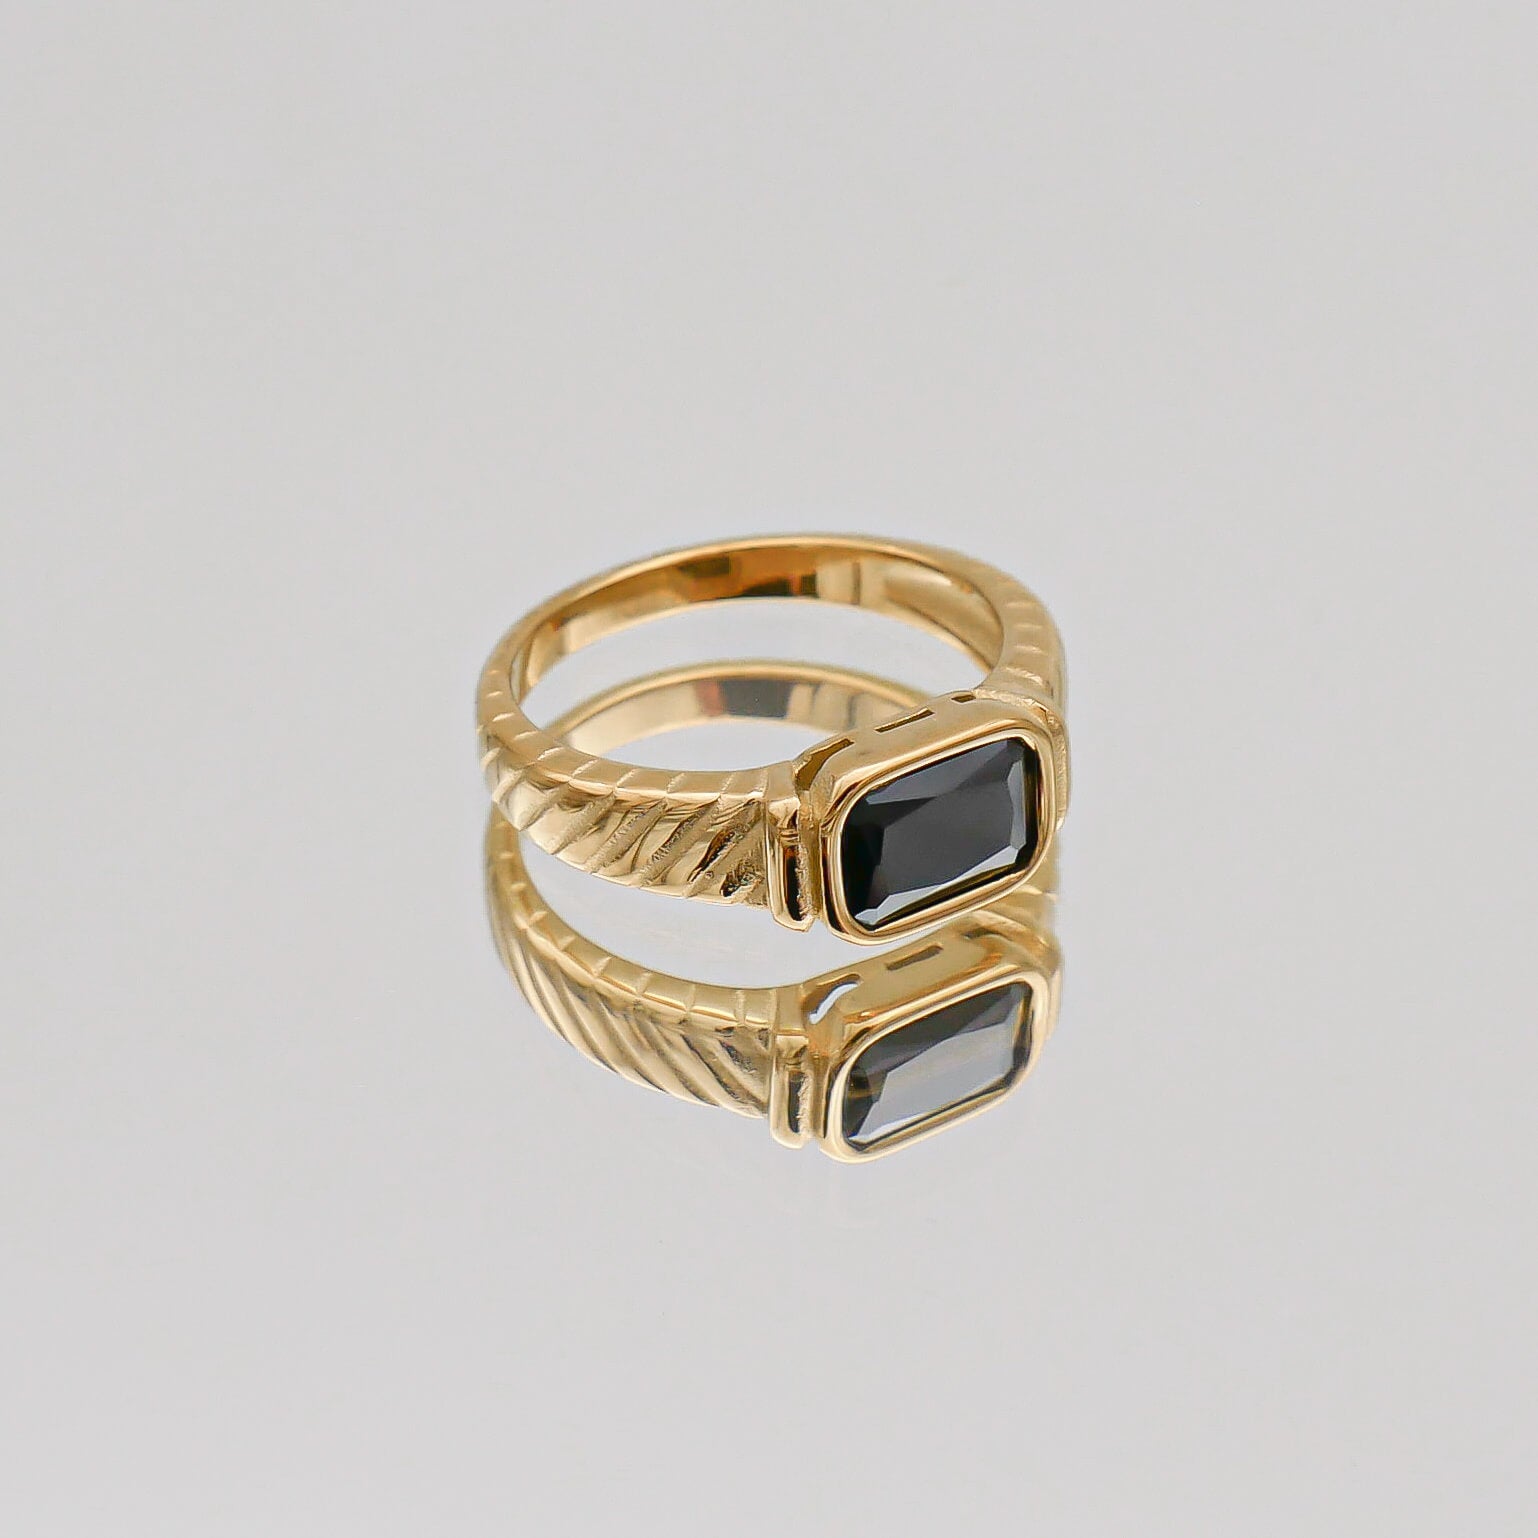 Gold Nora Onyx gemstone Ring by PRYA